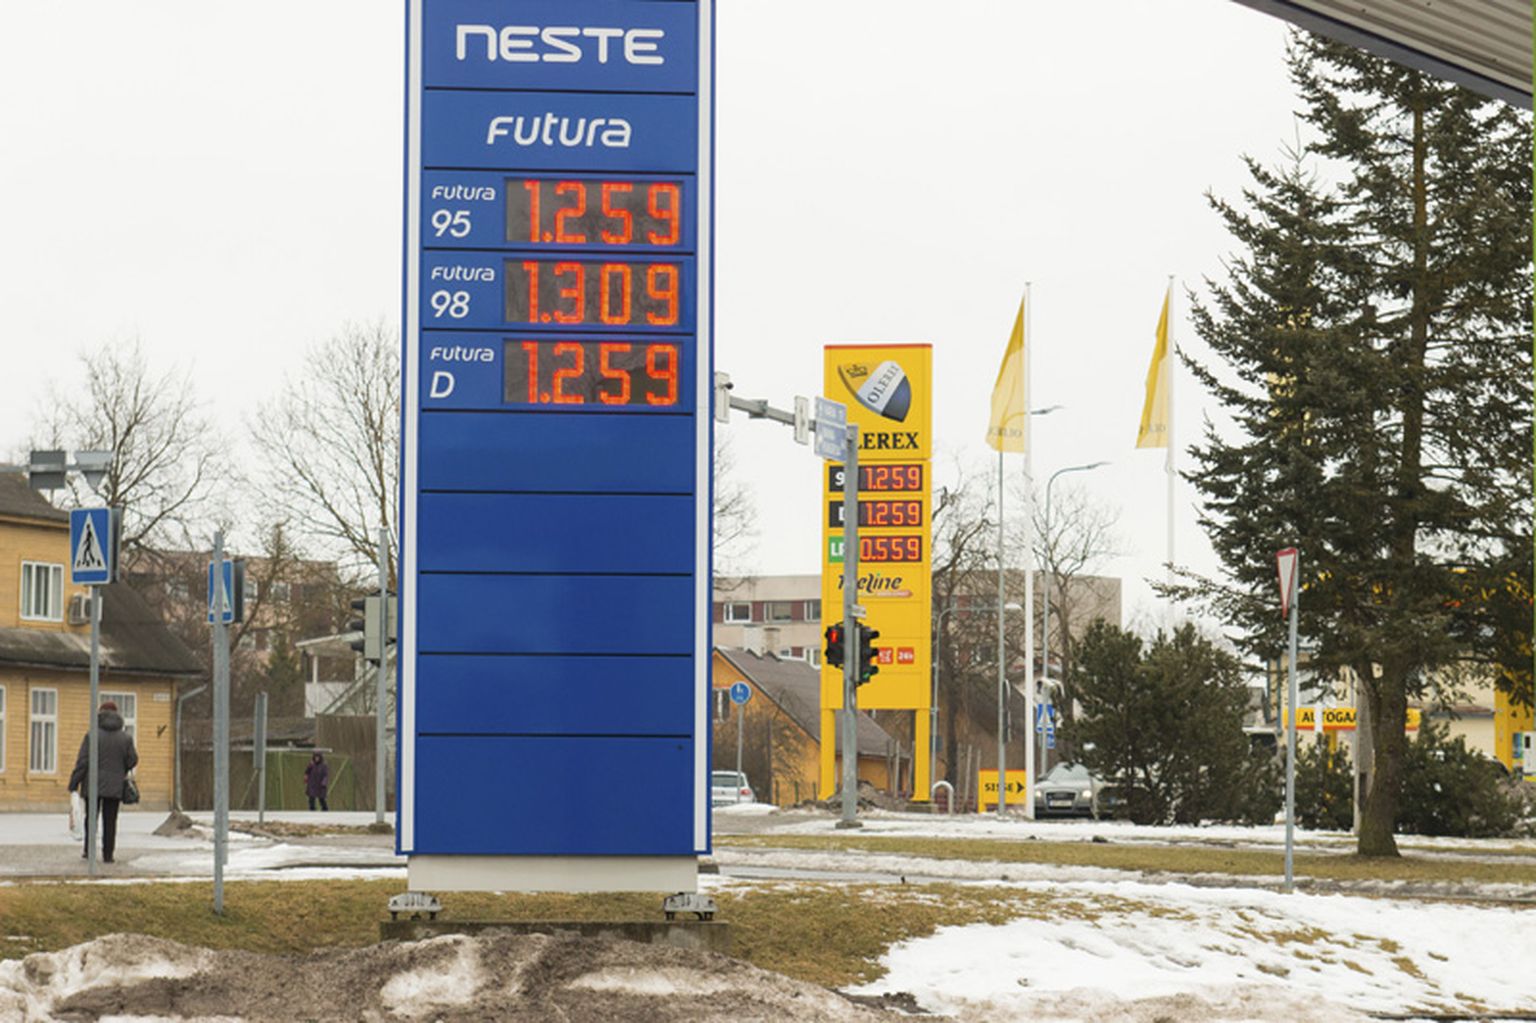 Kõrged kütusehinnad sunnivad osa transpordi­ettevõtteid oma tegevust hindama ja paratamatult ka küsima - kas ­senisel kujul suudetakse jätkata.